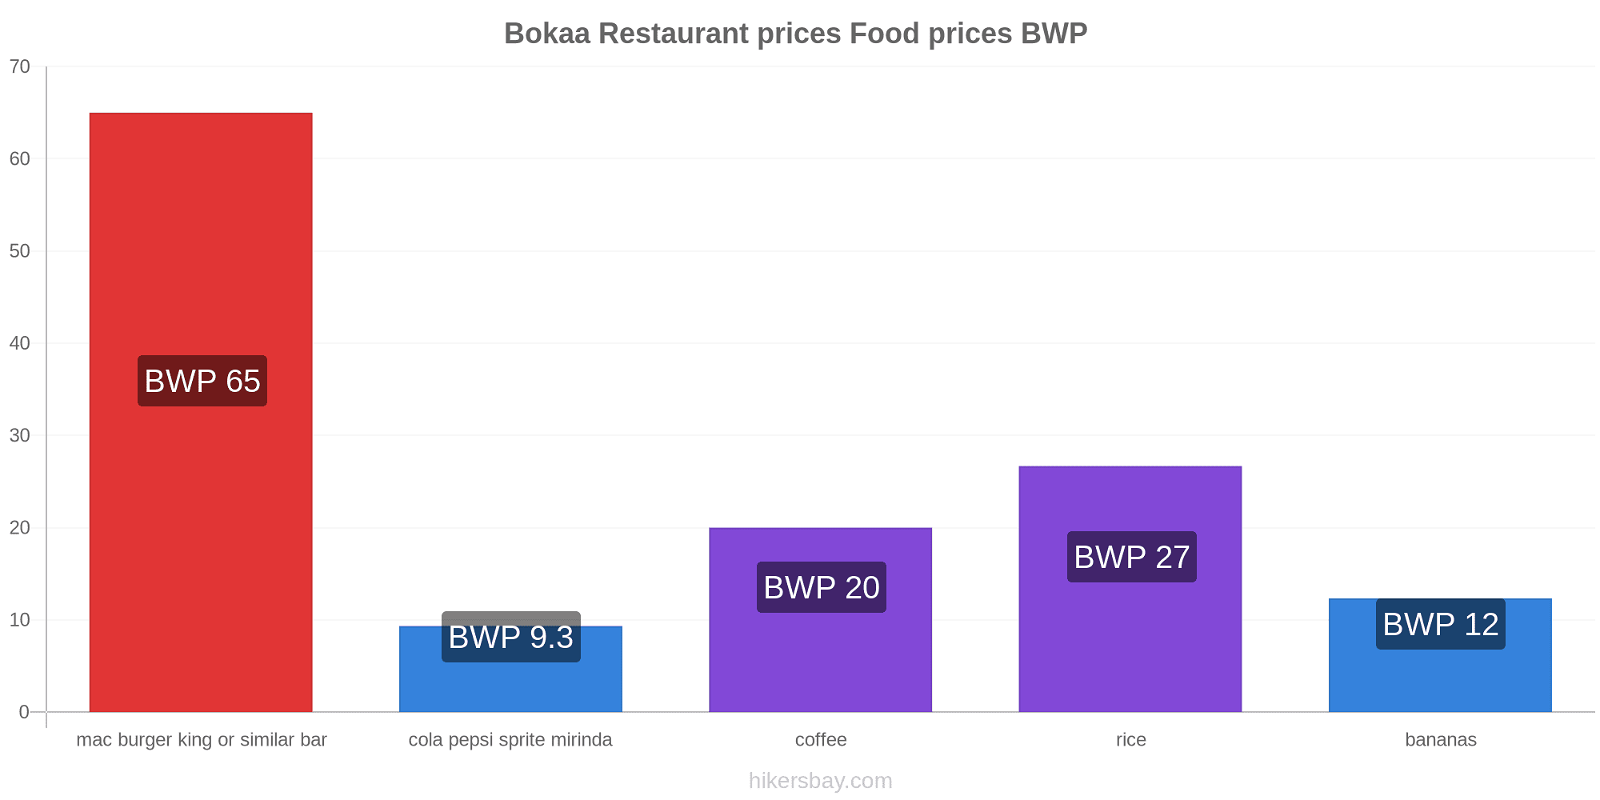 Bokaa price changes hikersbay.com